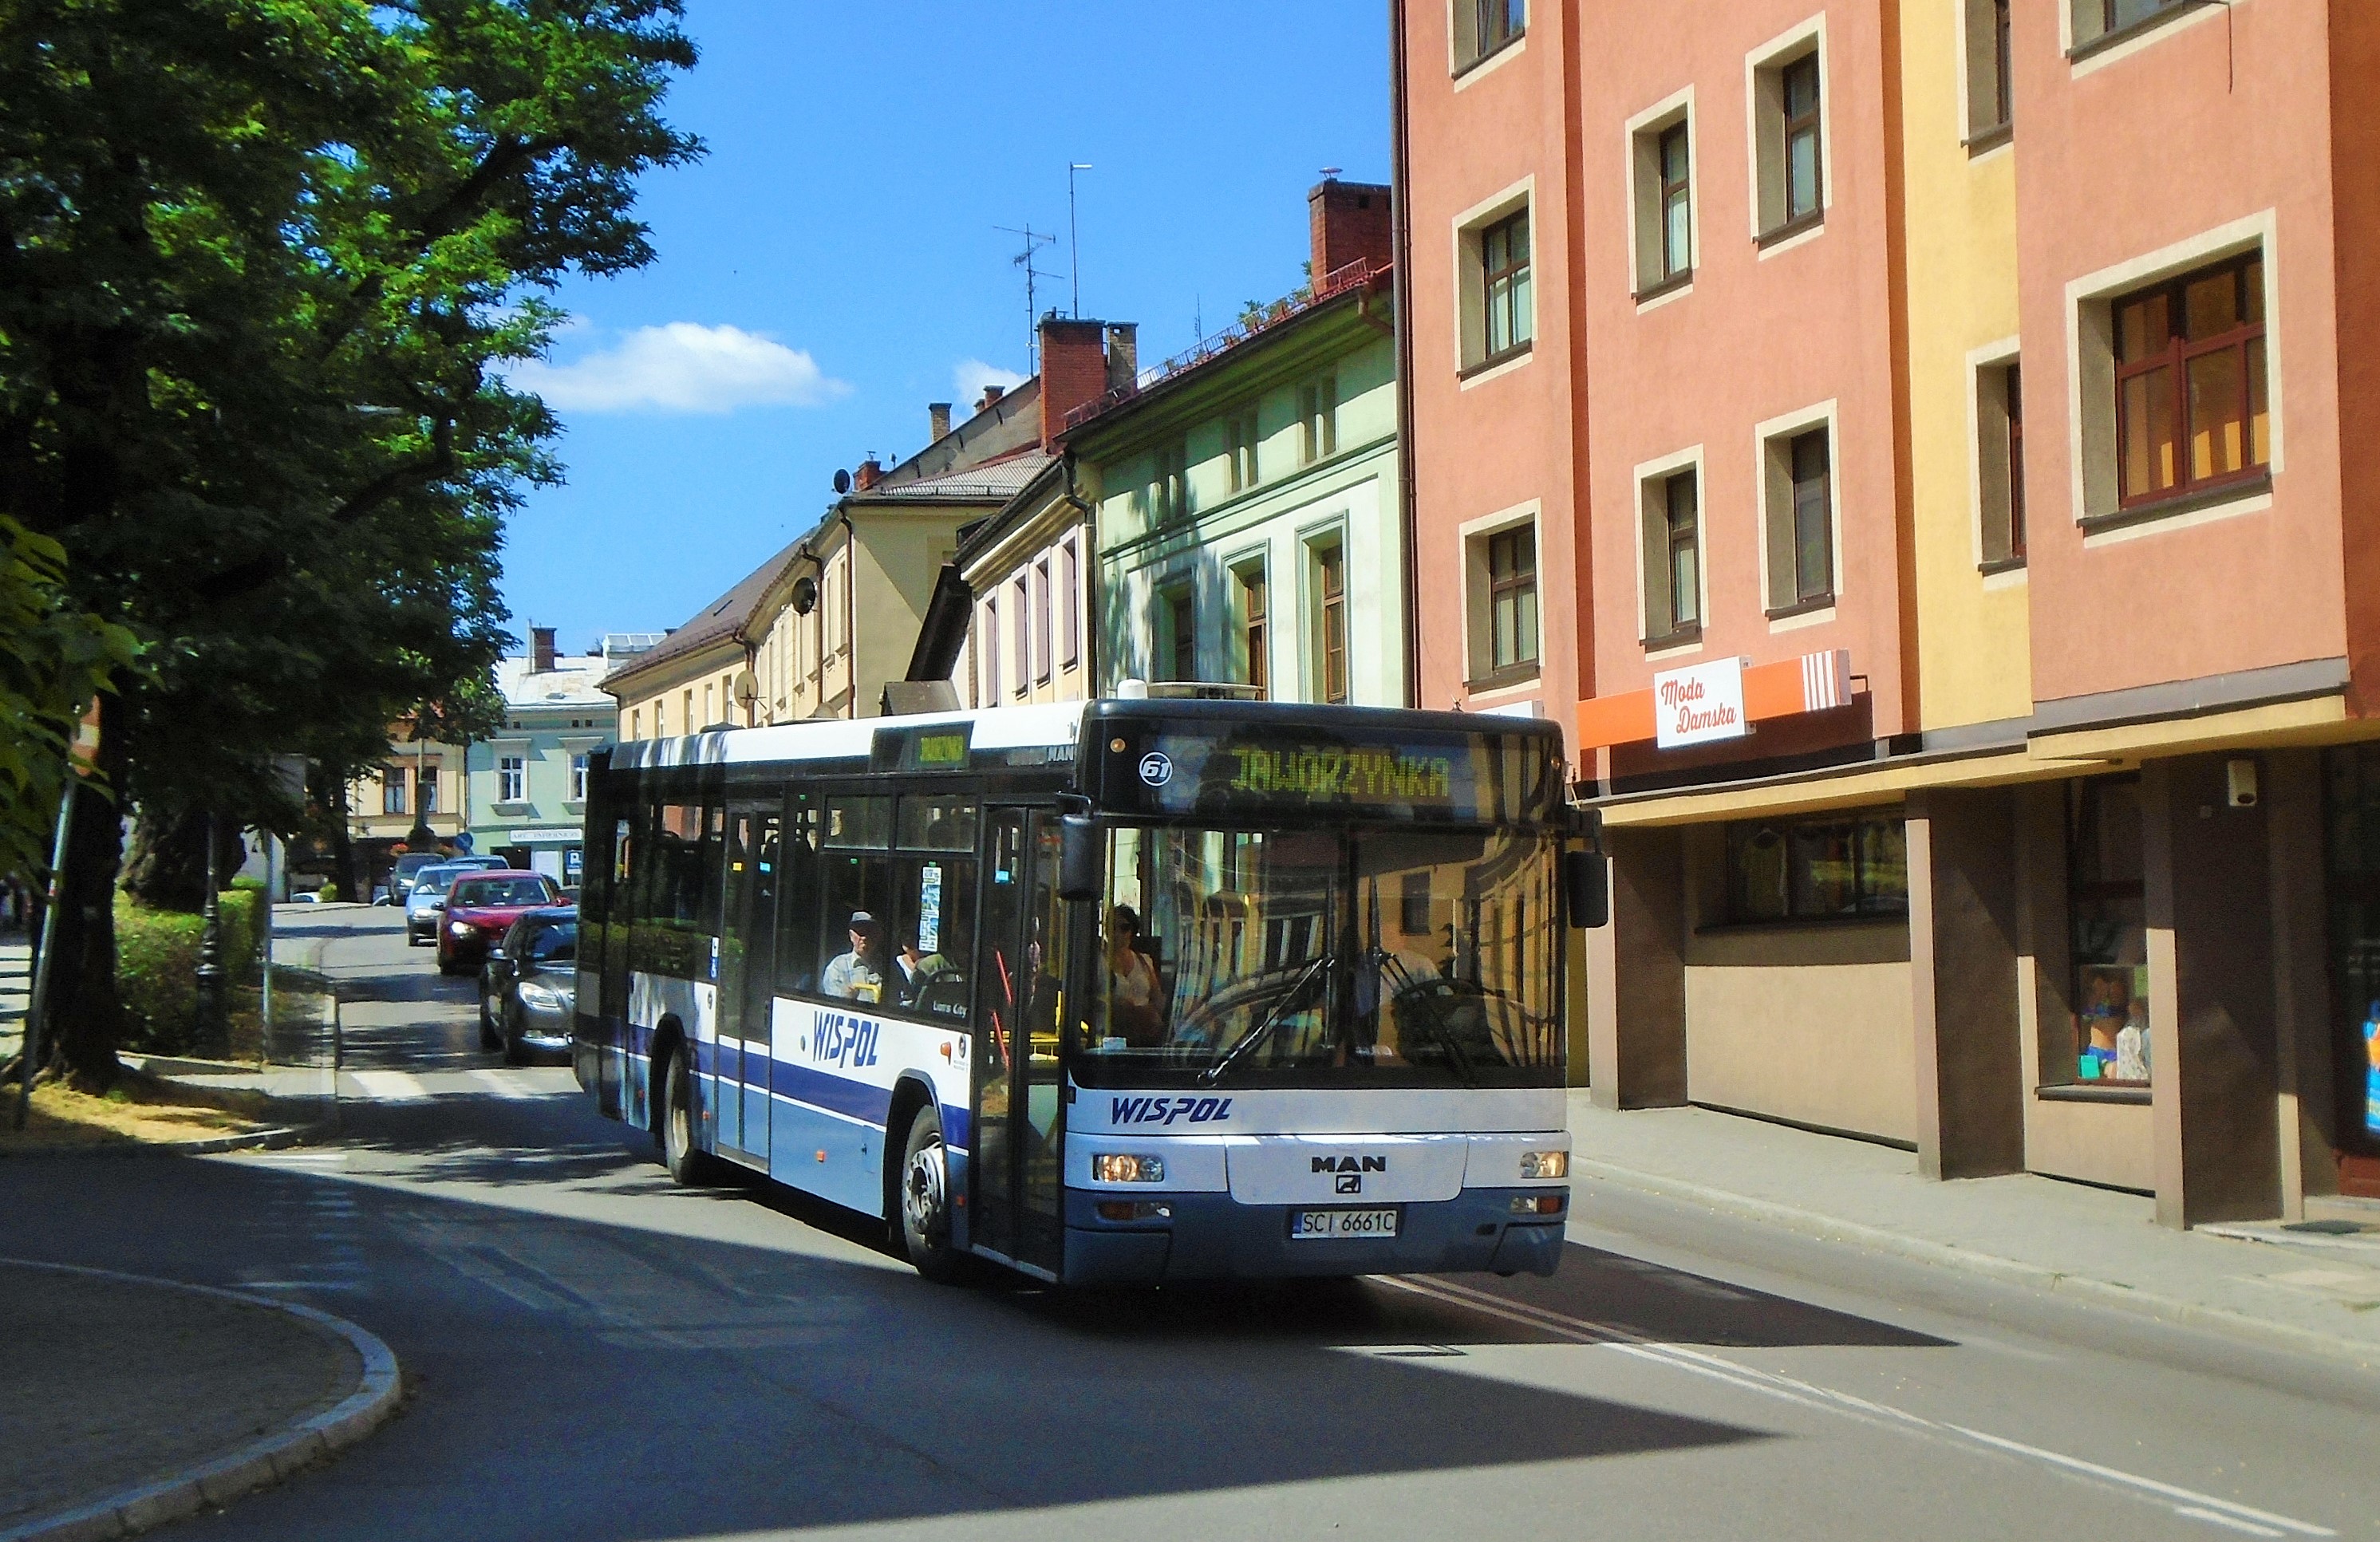 61 vyjíždí na lince J1,pod místním hlavním příměstským dopravcem Wispol,vyjíždí z centra Cieszyna od zast.Garncarska